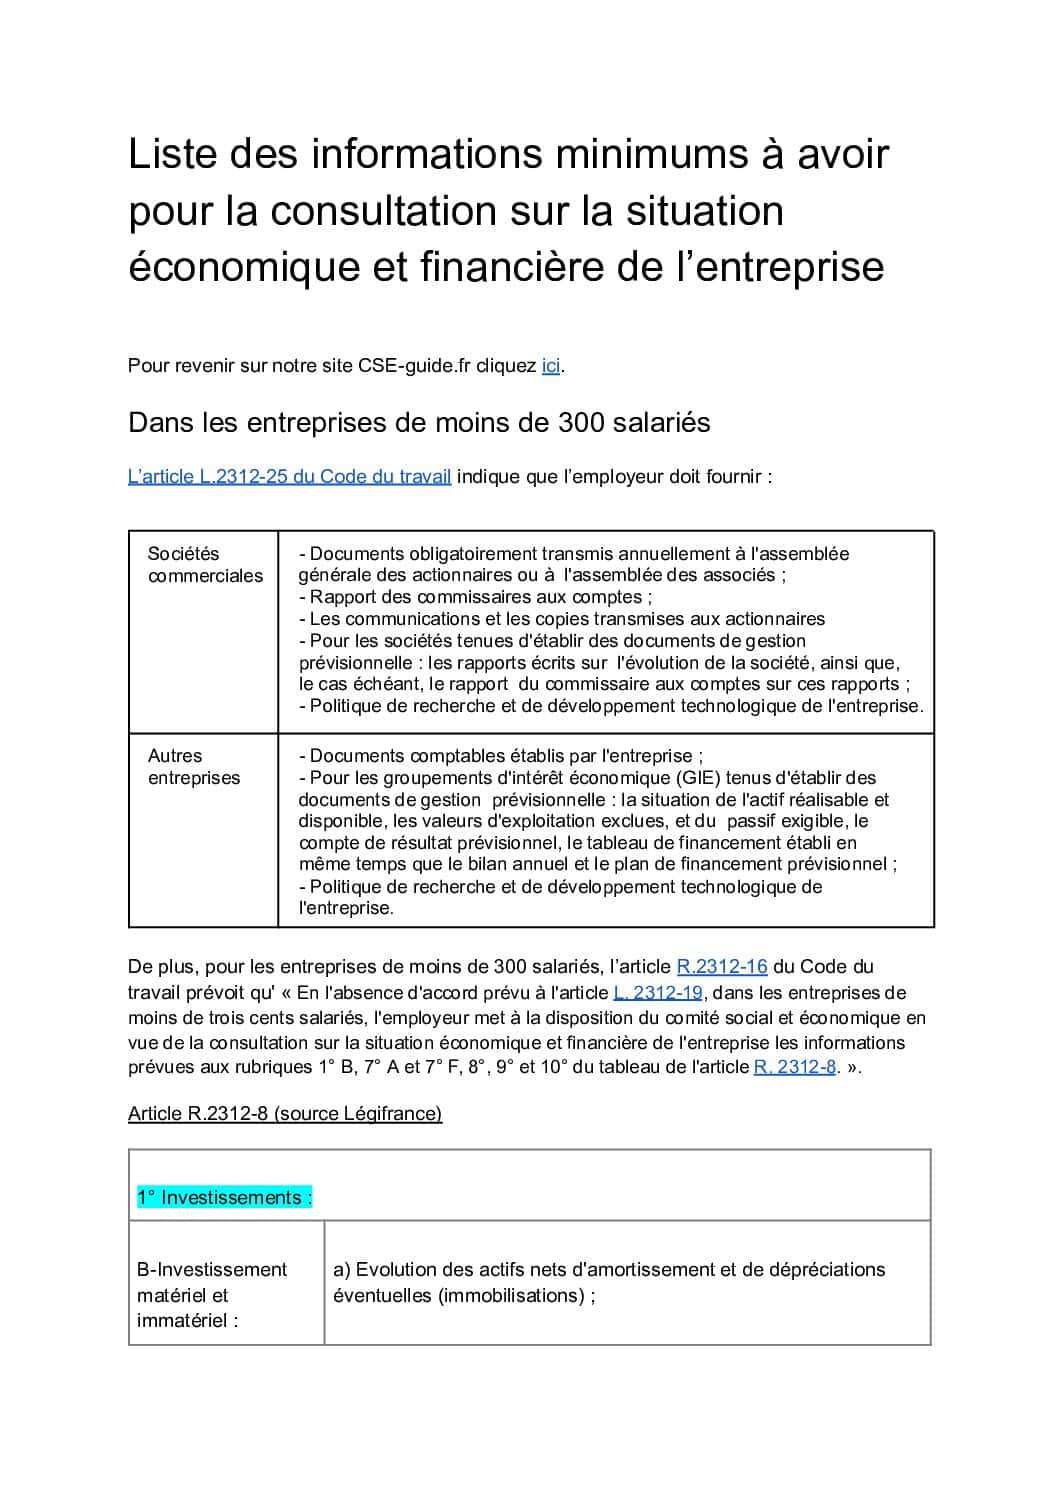 Informations consultation situation économique financière  résumé loi CSE-guide.fr